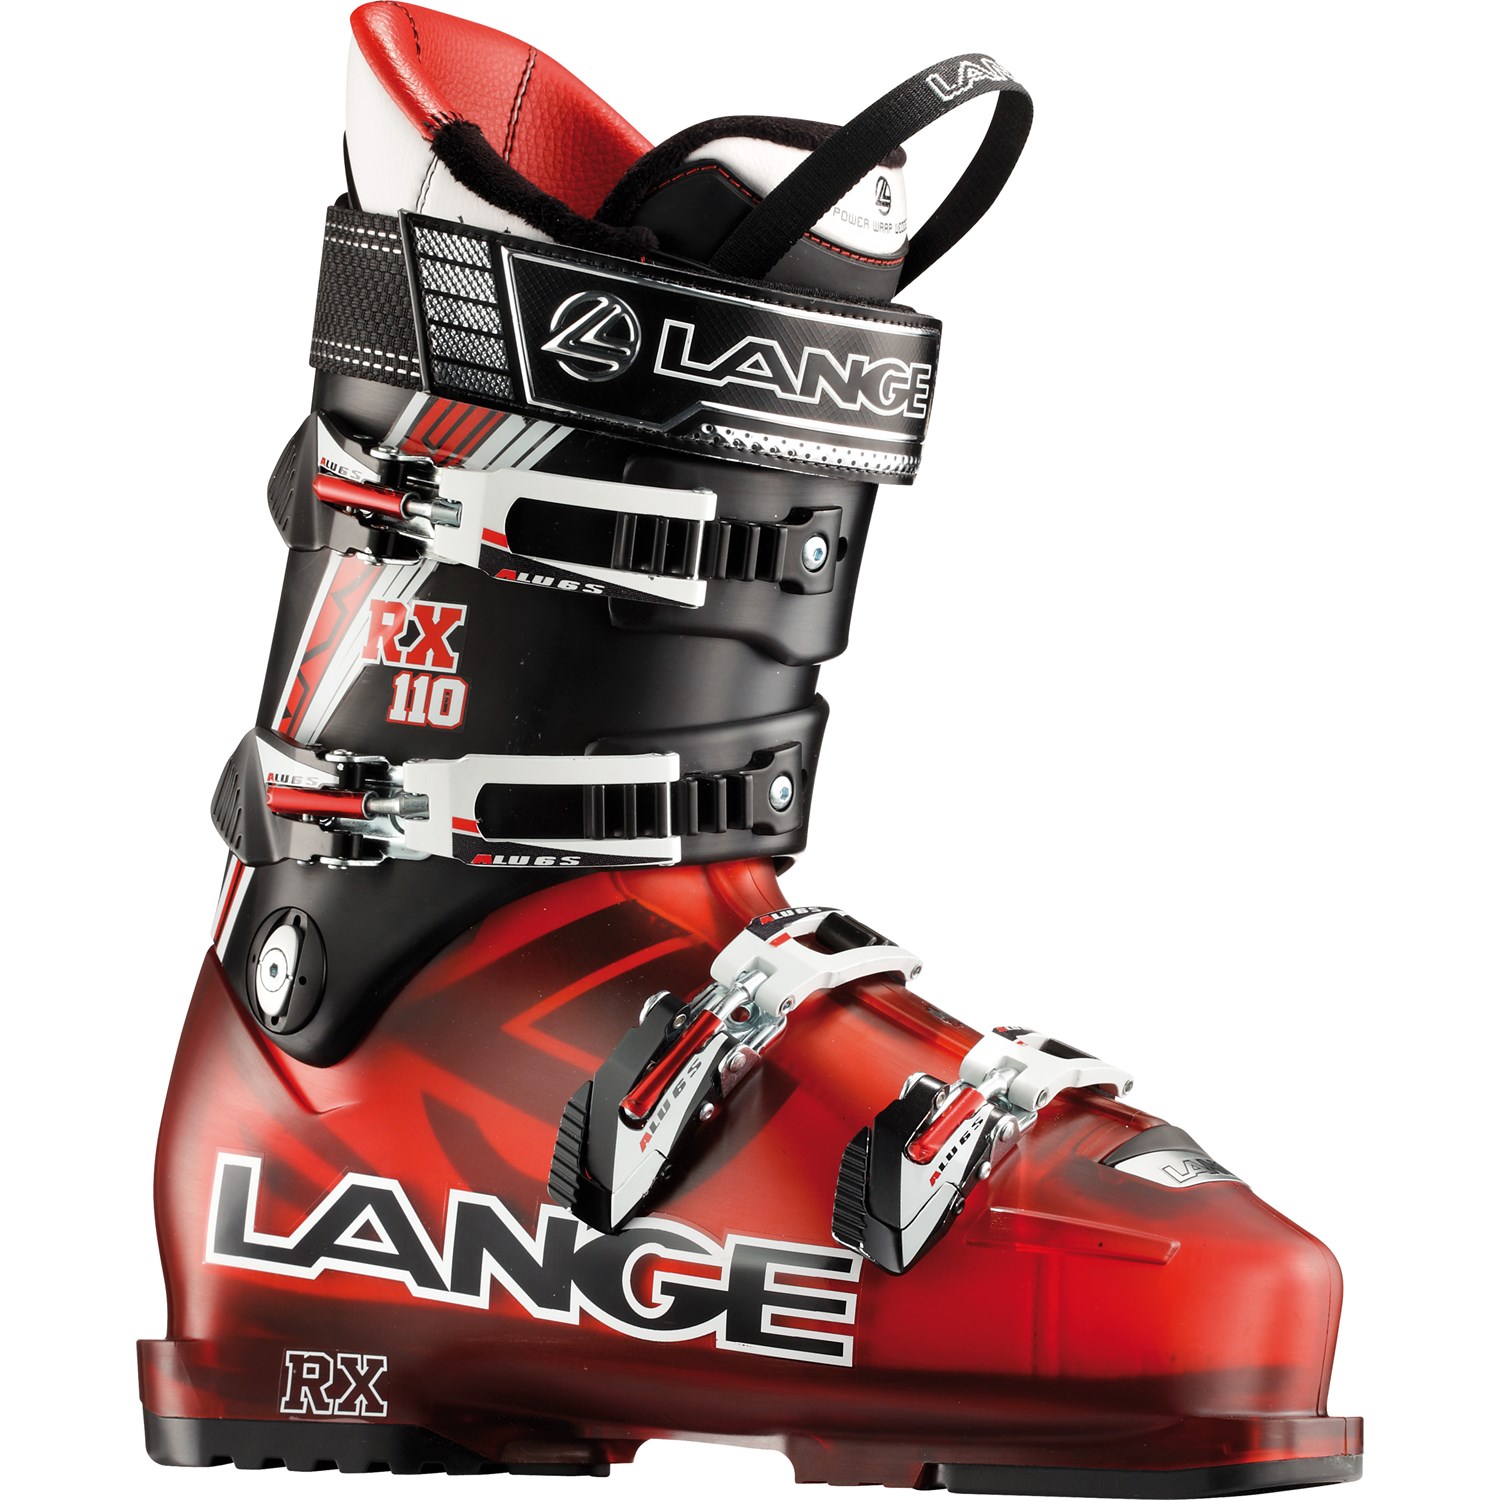 Fluisteren lastig Sophie Lange RX 110 Ski Boots 2012 | evo